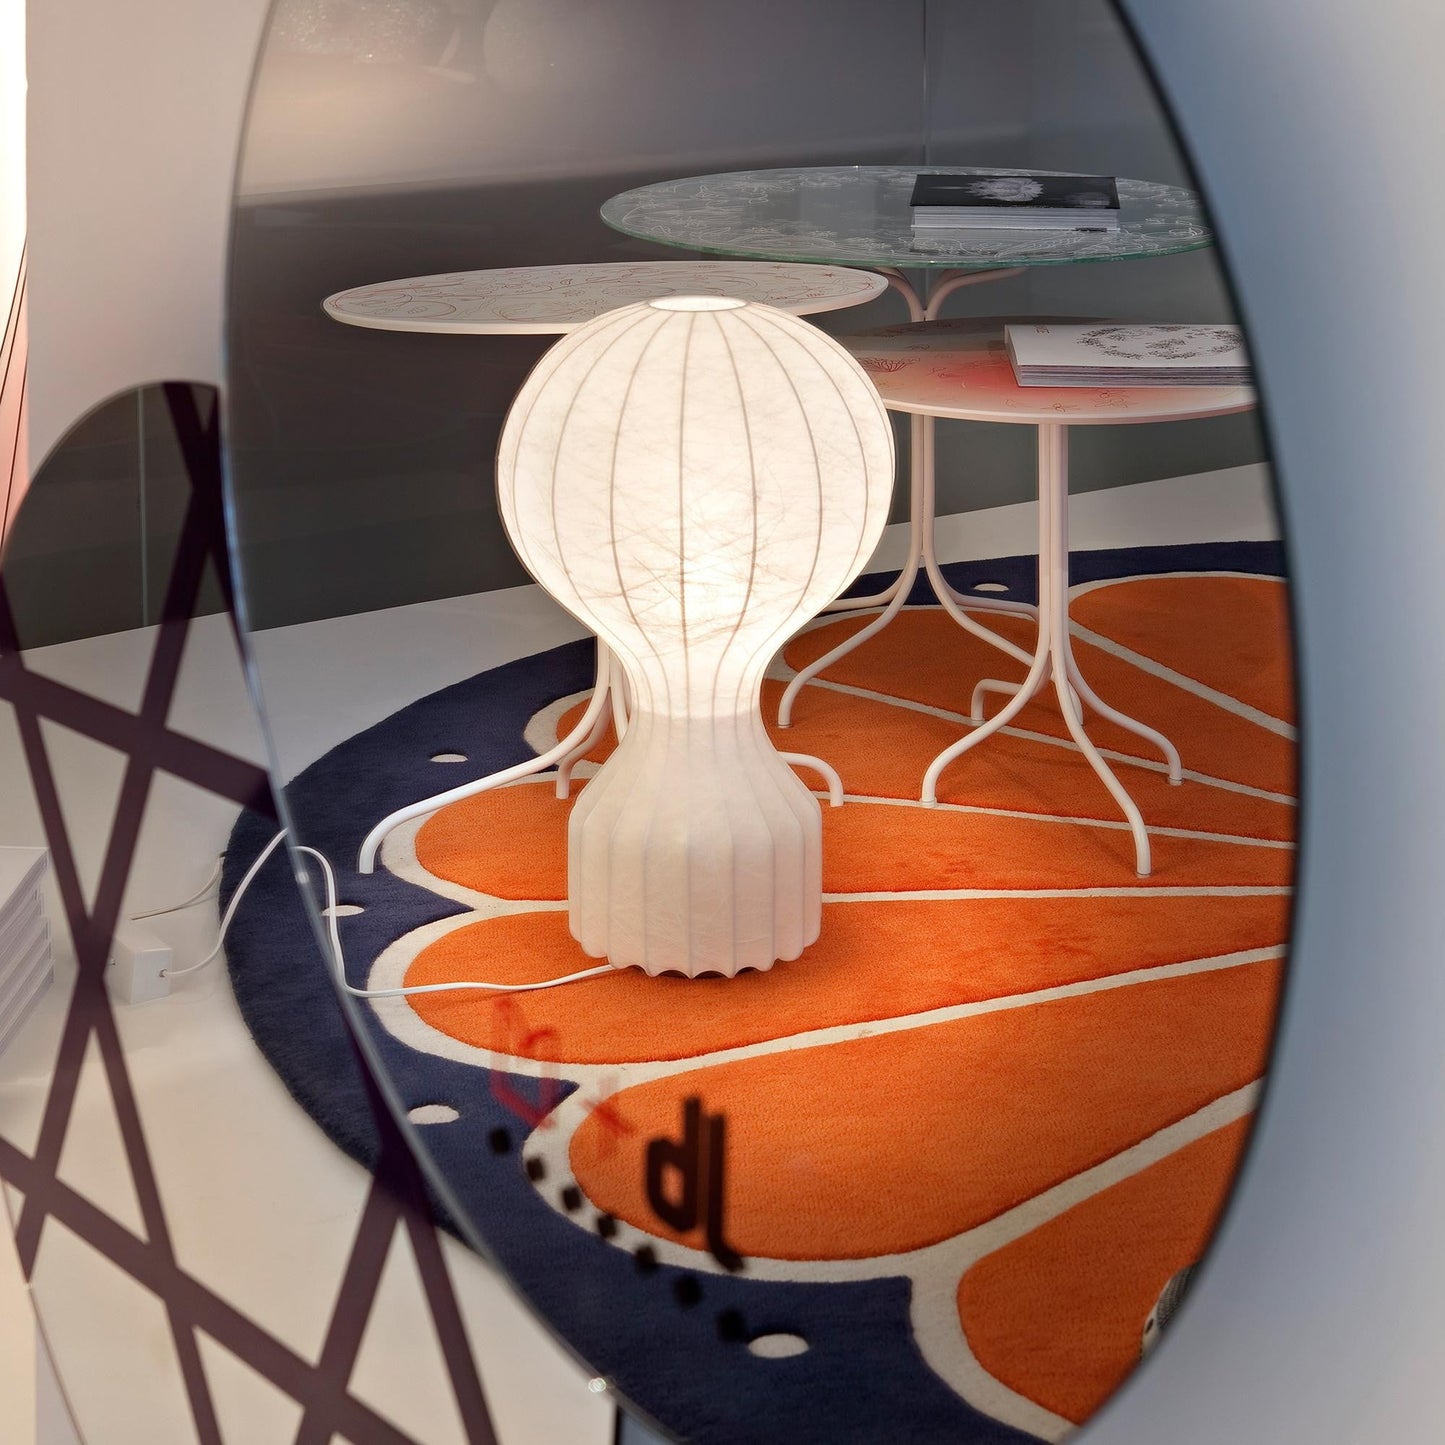 Flos - Lampe de table - Gatto 56 cm